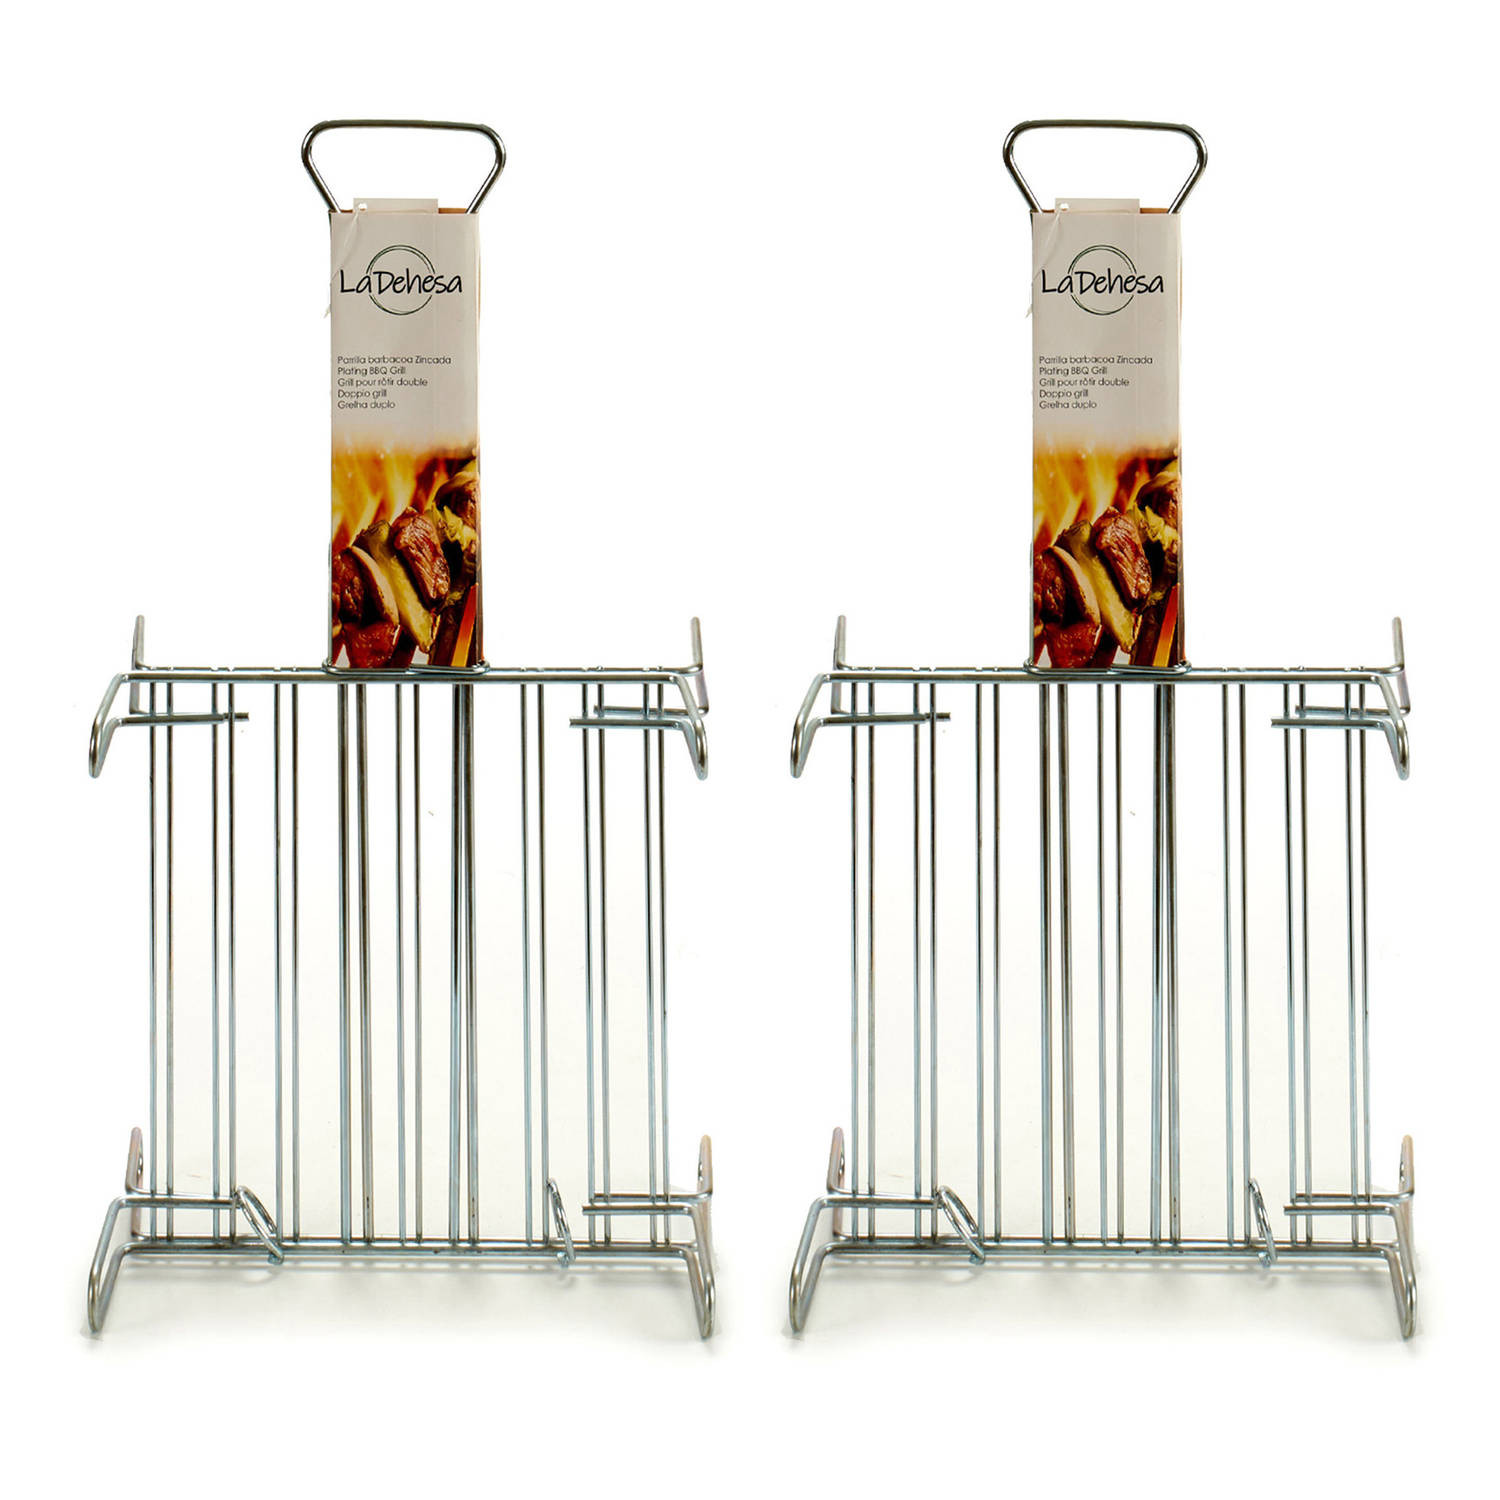 La Dehesa BBQ/barbecue braadrooster - 2x - grill verhoger - metaal - 26 x 26 x 8 cm - barbecueroosters